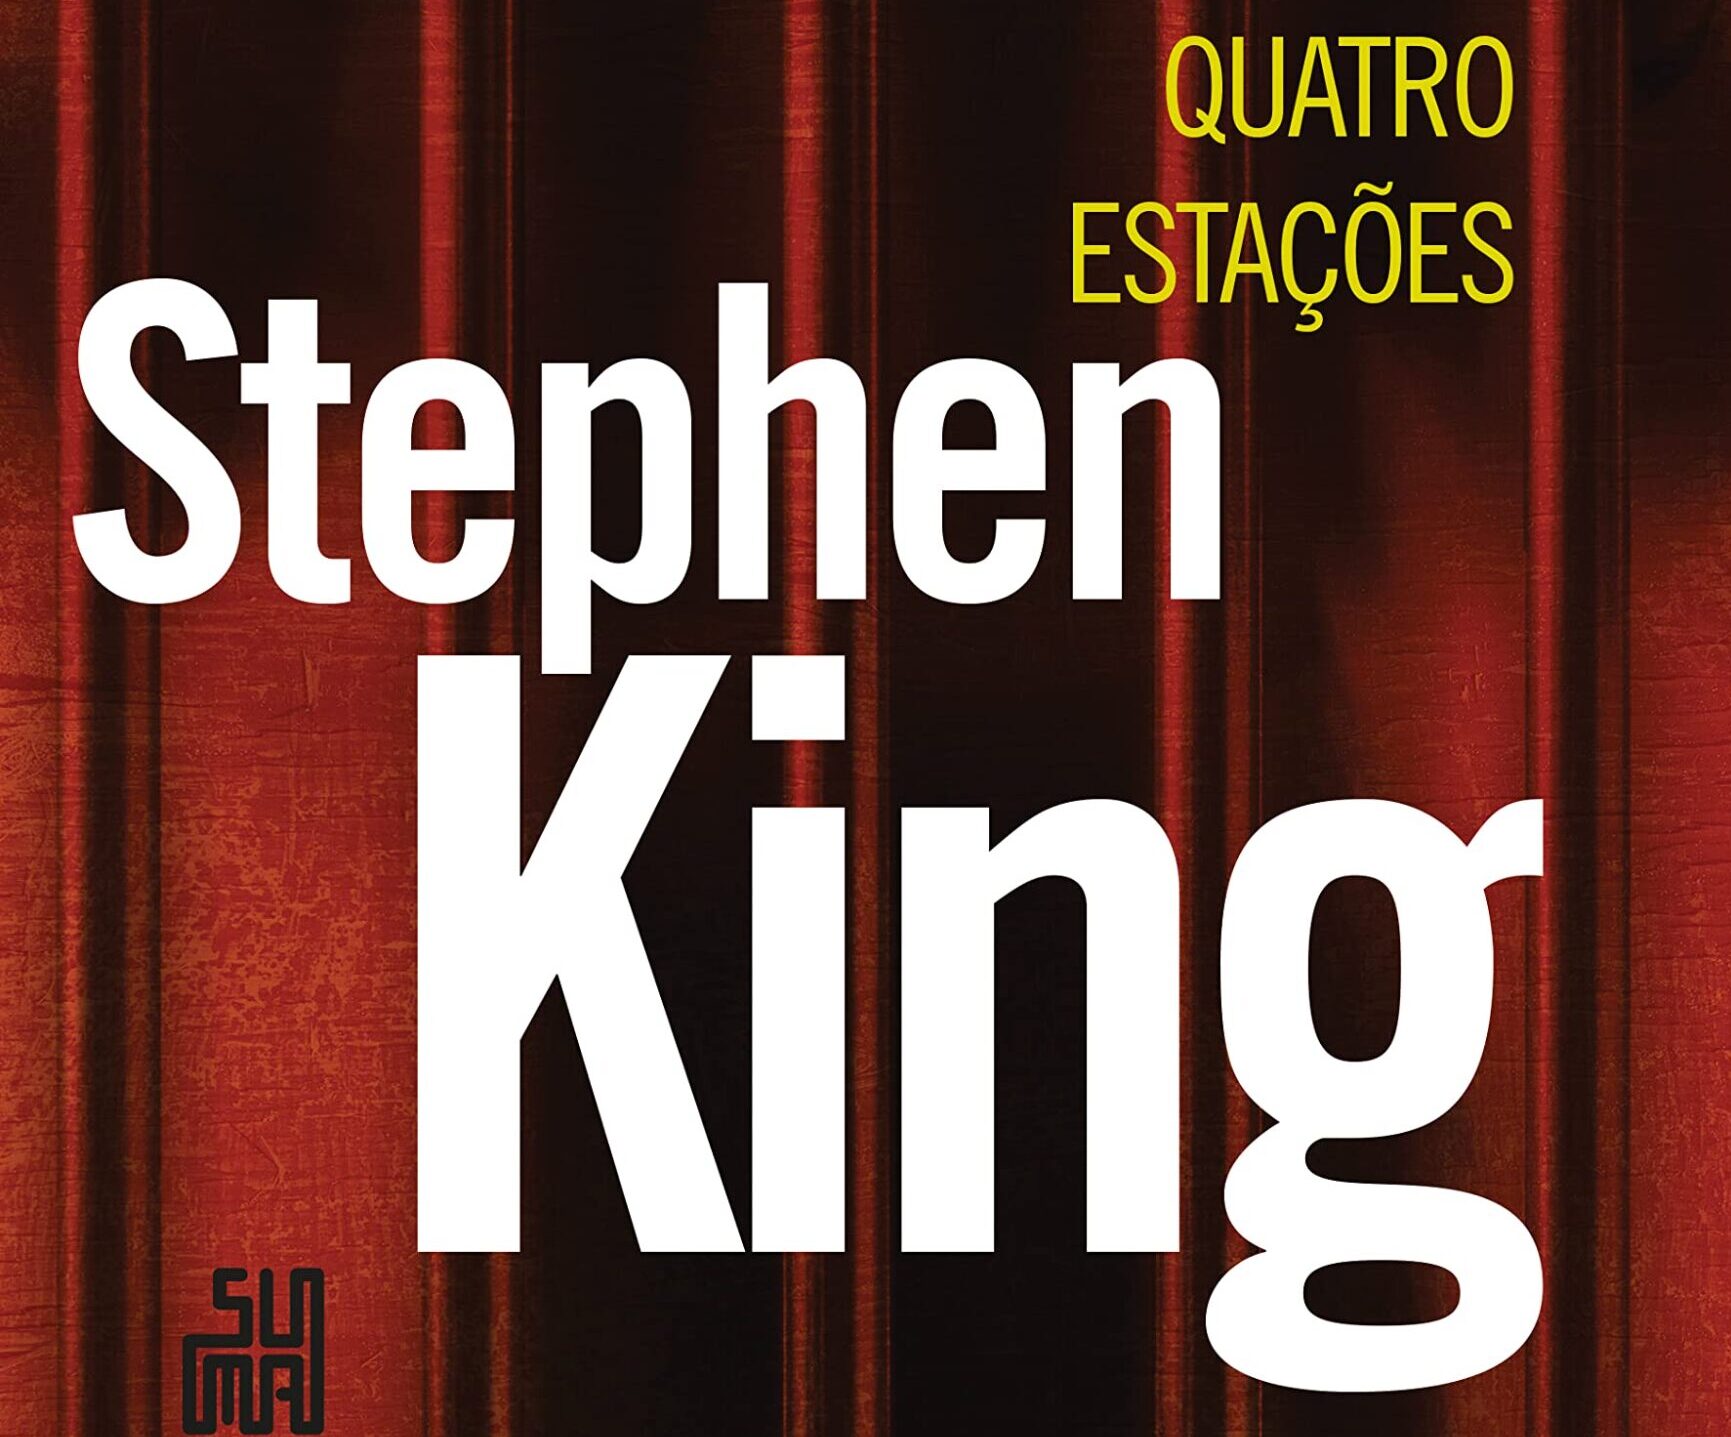 Quatro Estações: Resenha do livro de contos de Stephen King 20